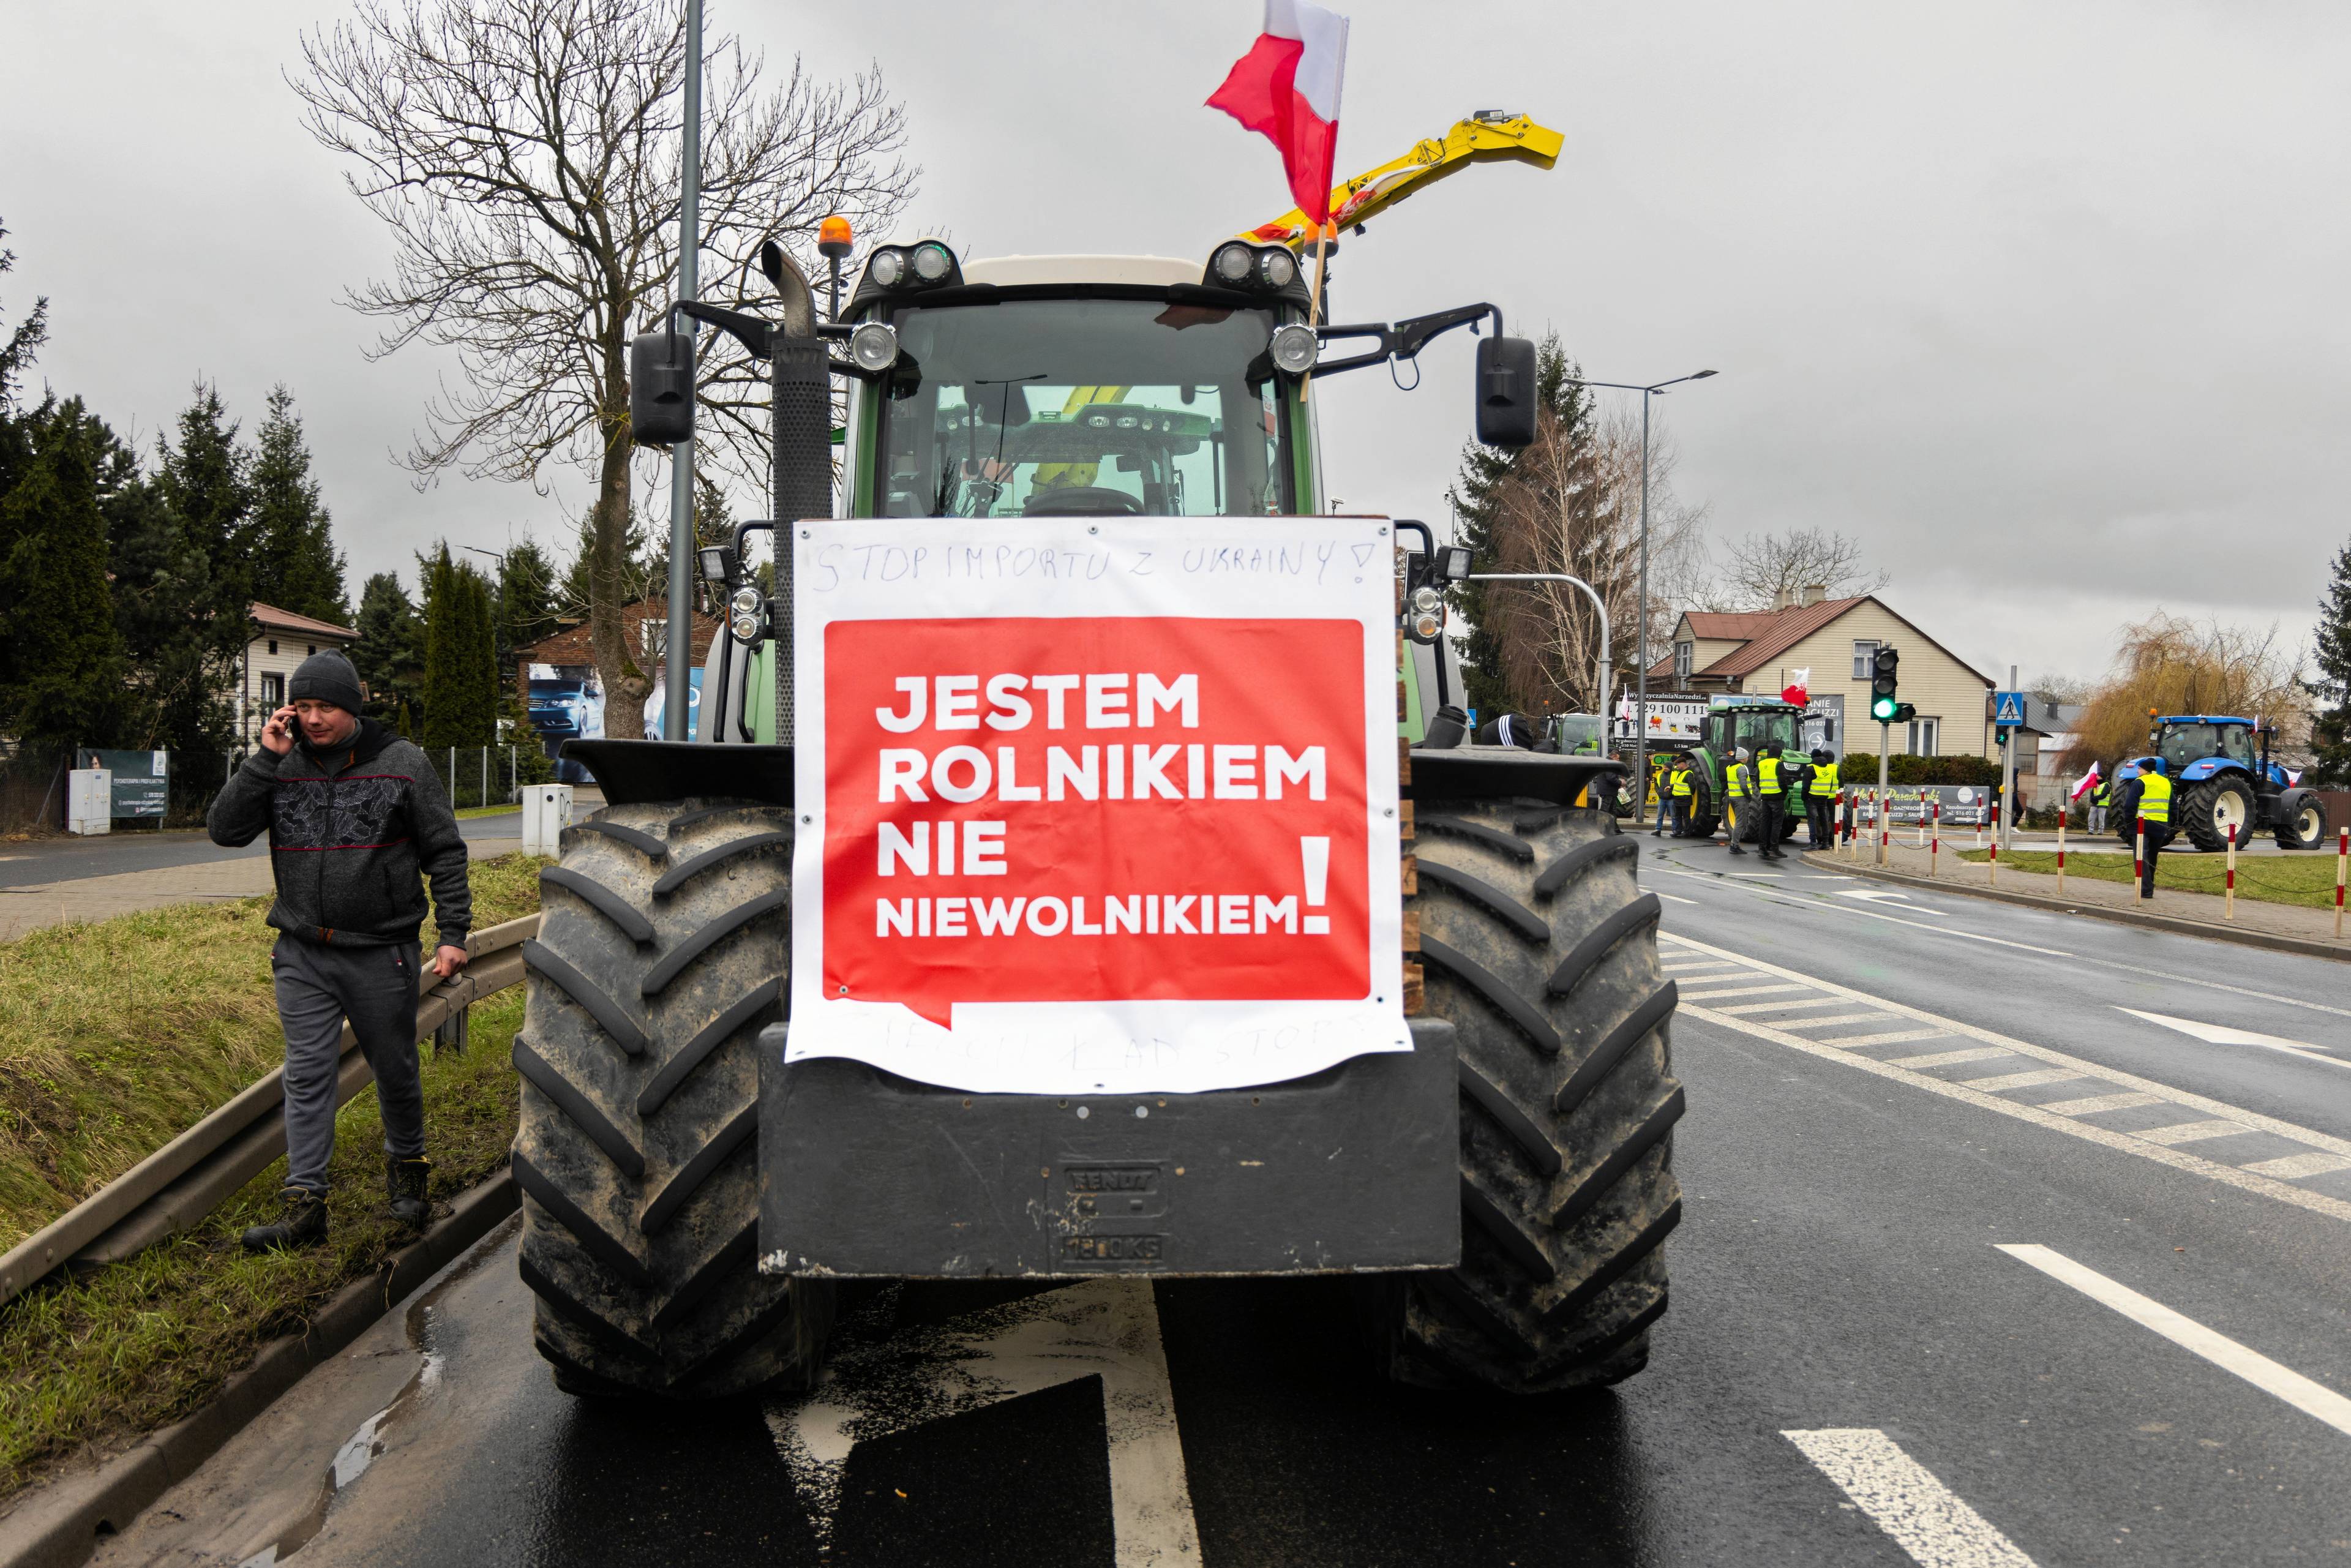 Traktor z napisem "jestem rolnikiem, nie niewolnikiem"